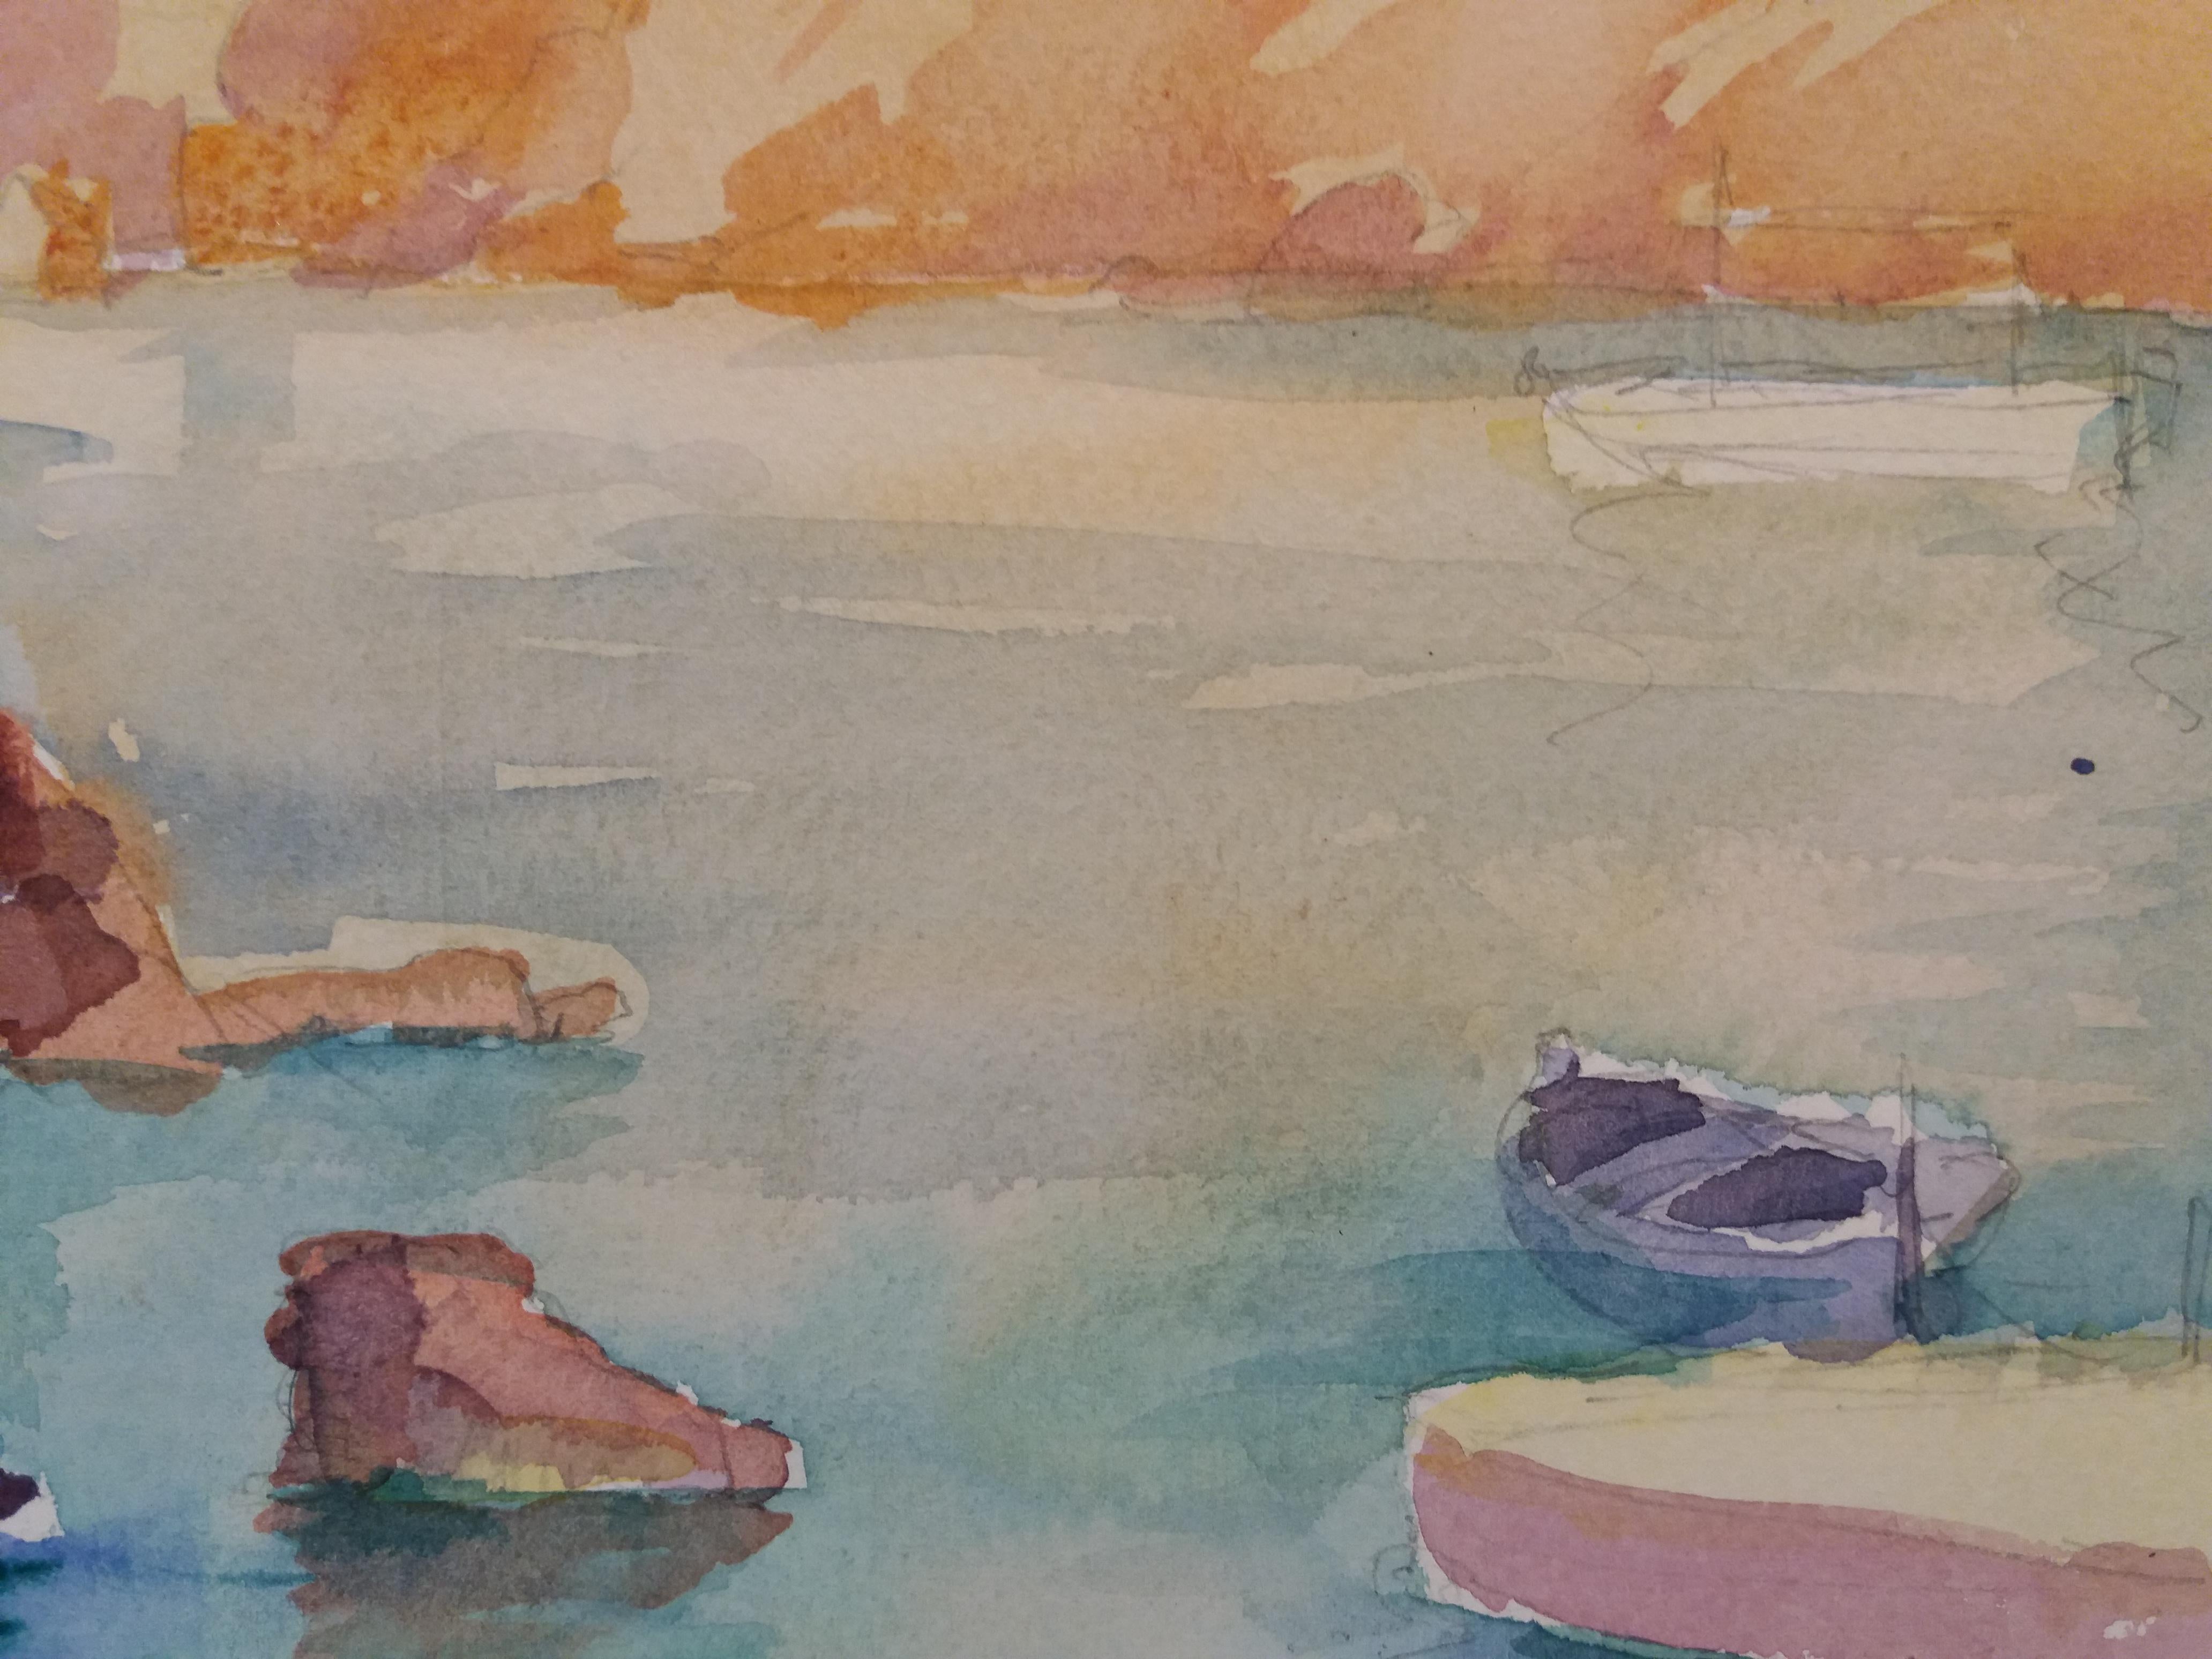 Küste original Aquarell Papier expressionistische Malerei. 
Dieser katalanische Maler, der sich seit Jahren auf Mallorca niedergelassen hat, bietet eine Reihe von Landschaften an, in denen die Natur auf impressionistische Art und Weise behandelt